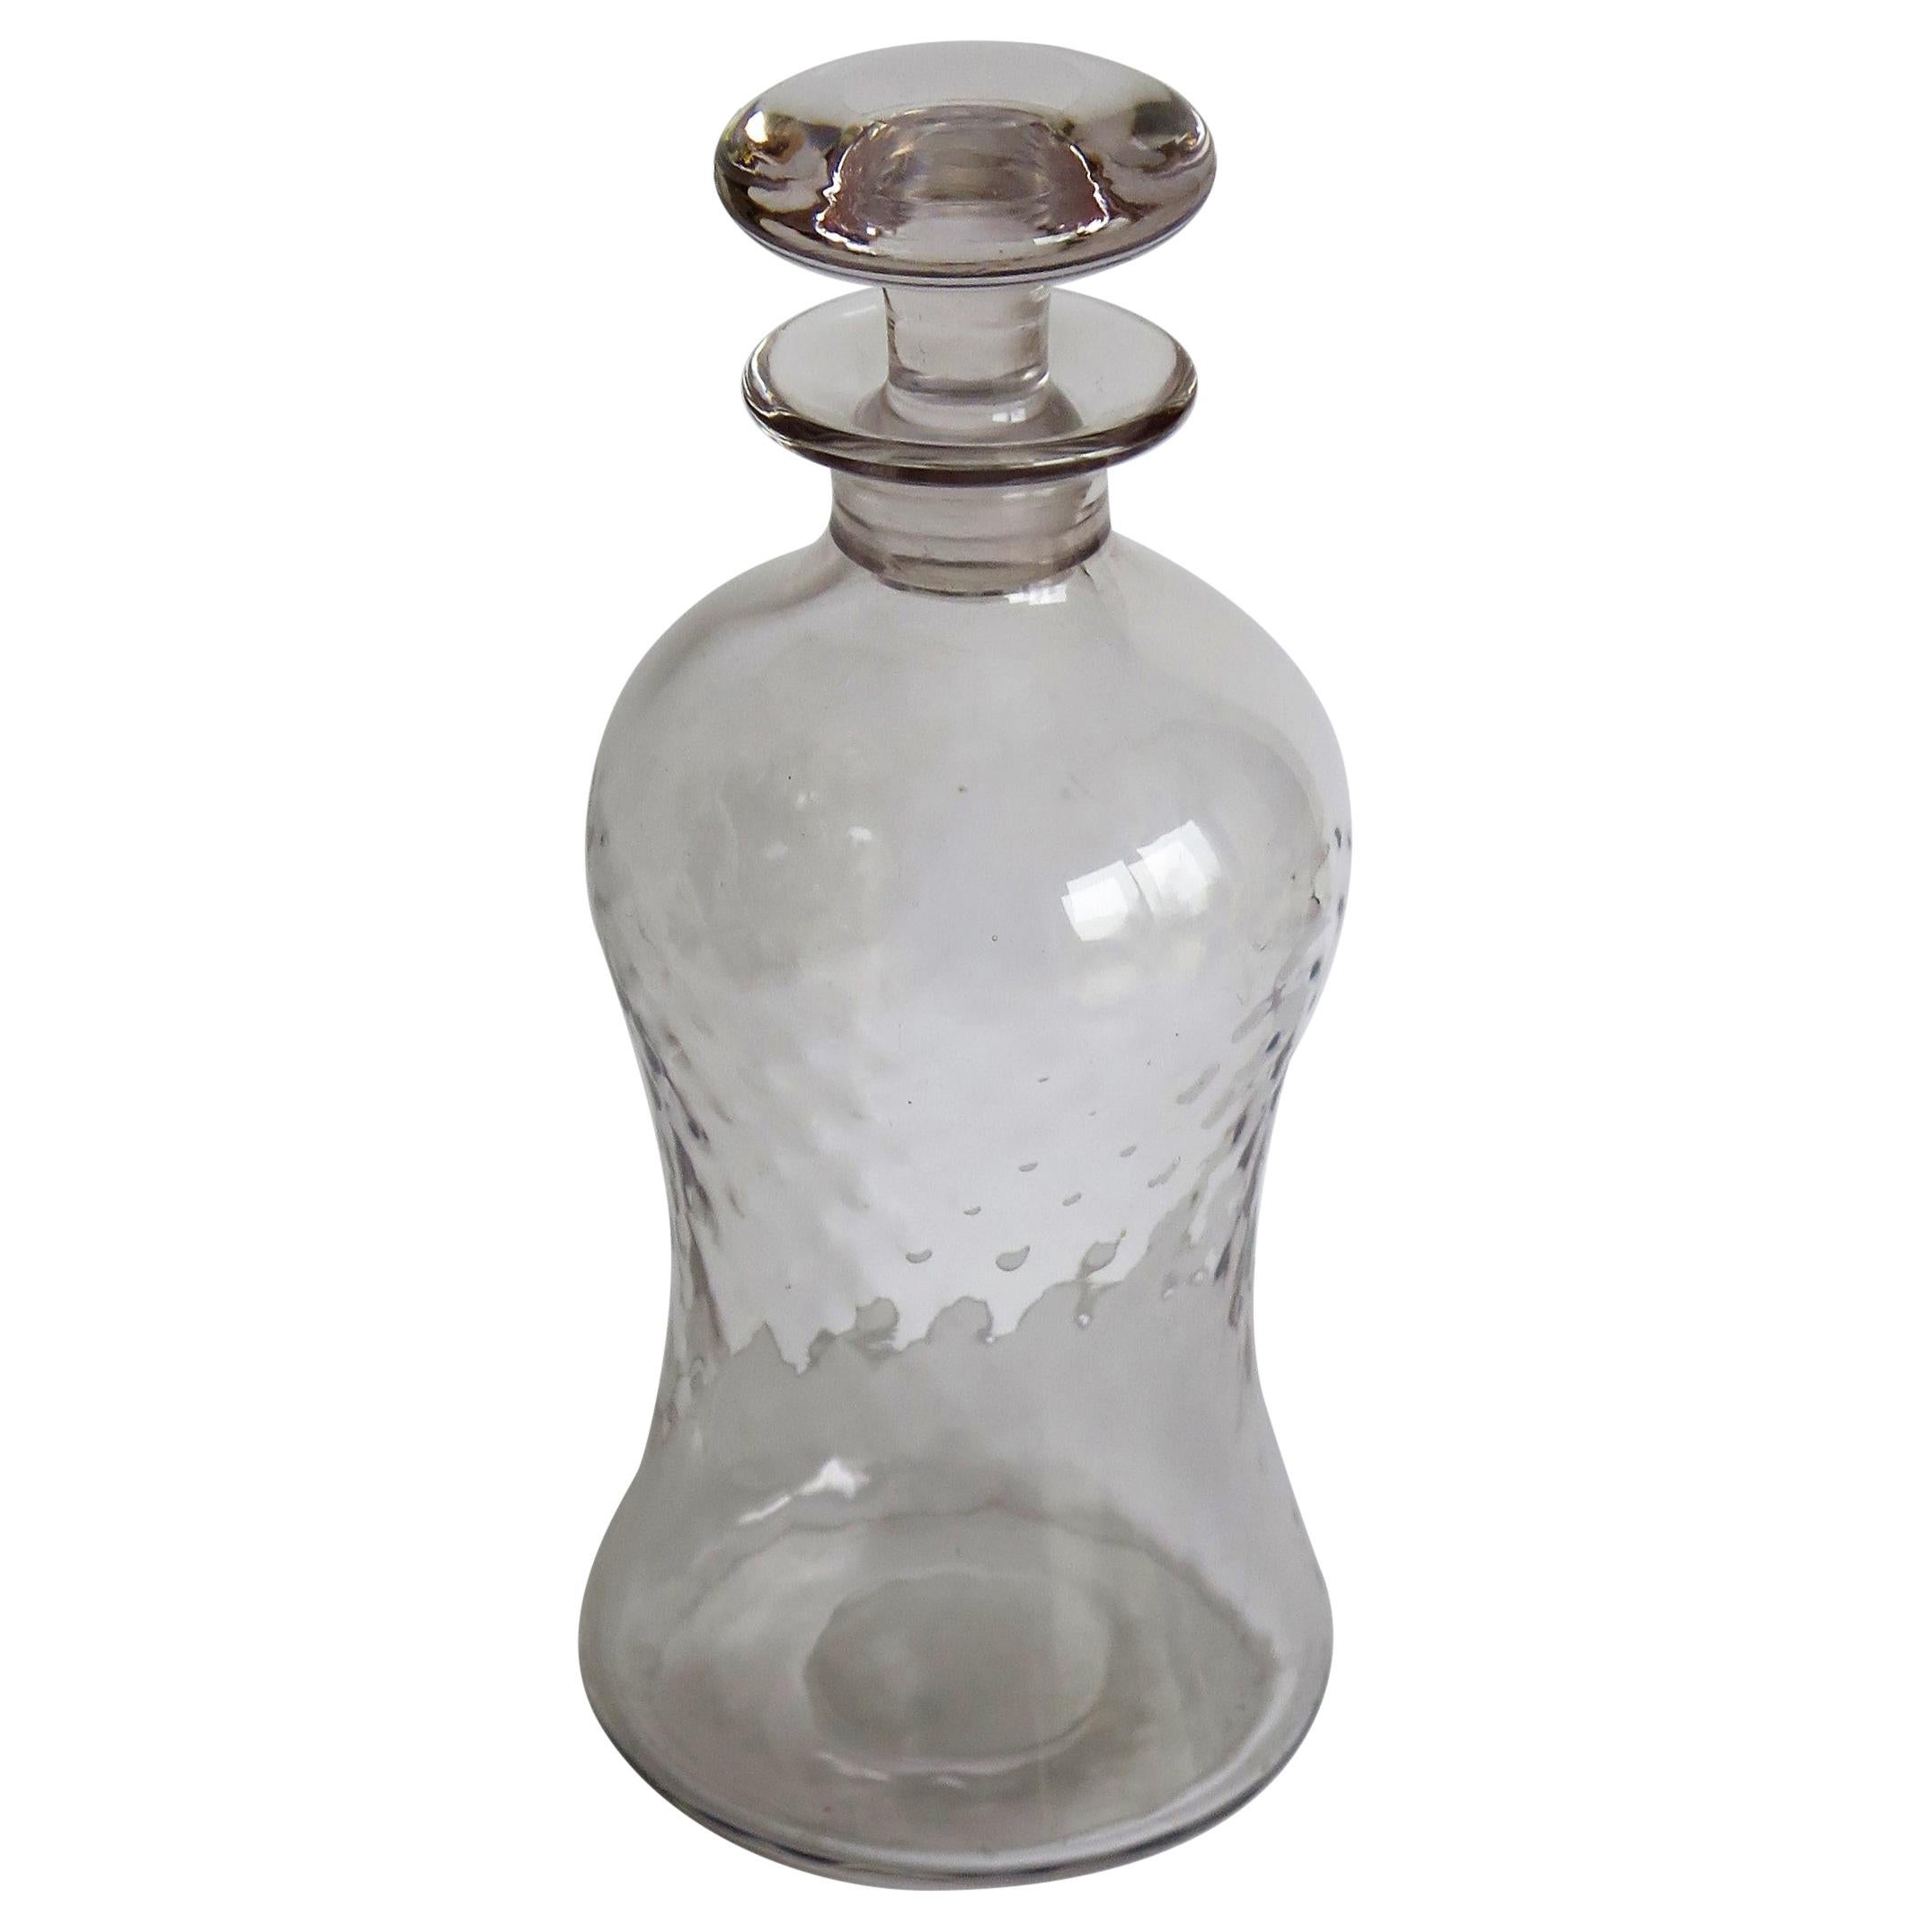 Carafe à décanter édouardienne en verre soufflé, moulée en creux avec bouchon en forme de champignon, vers 1900